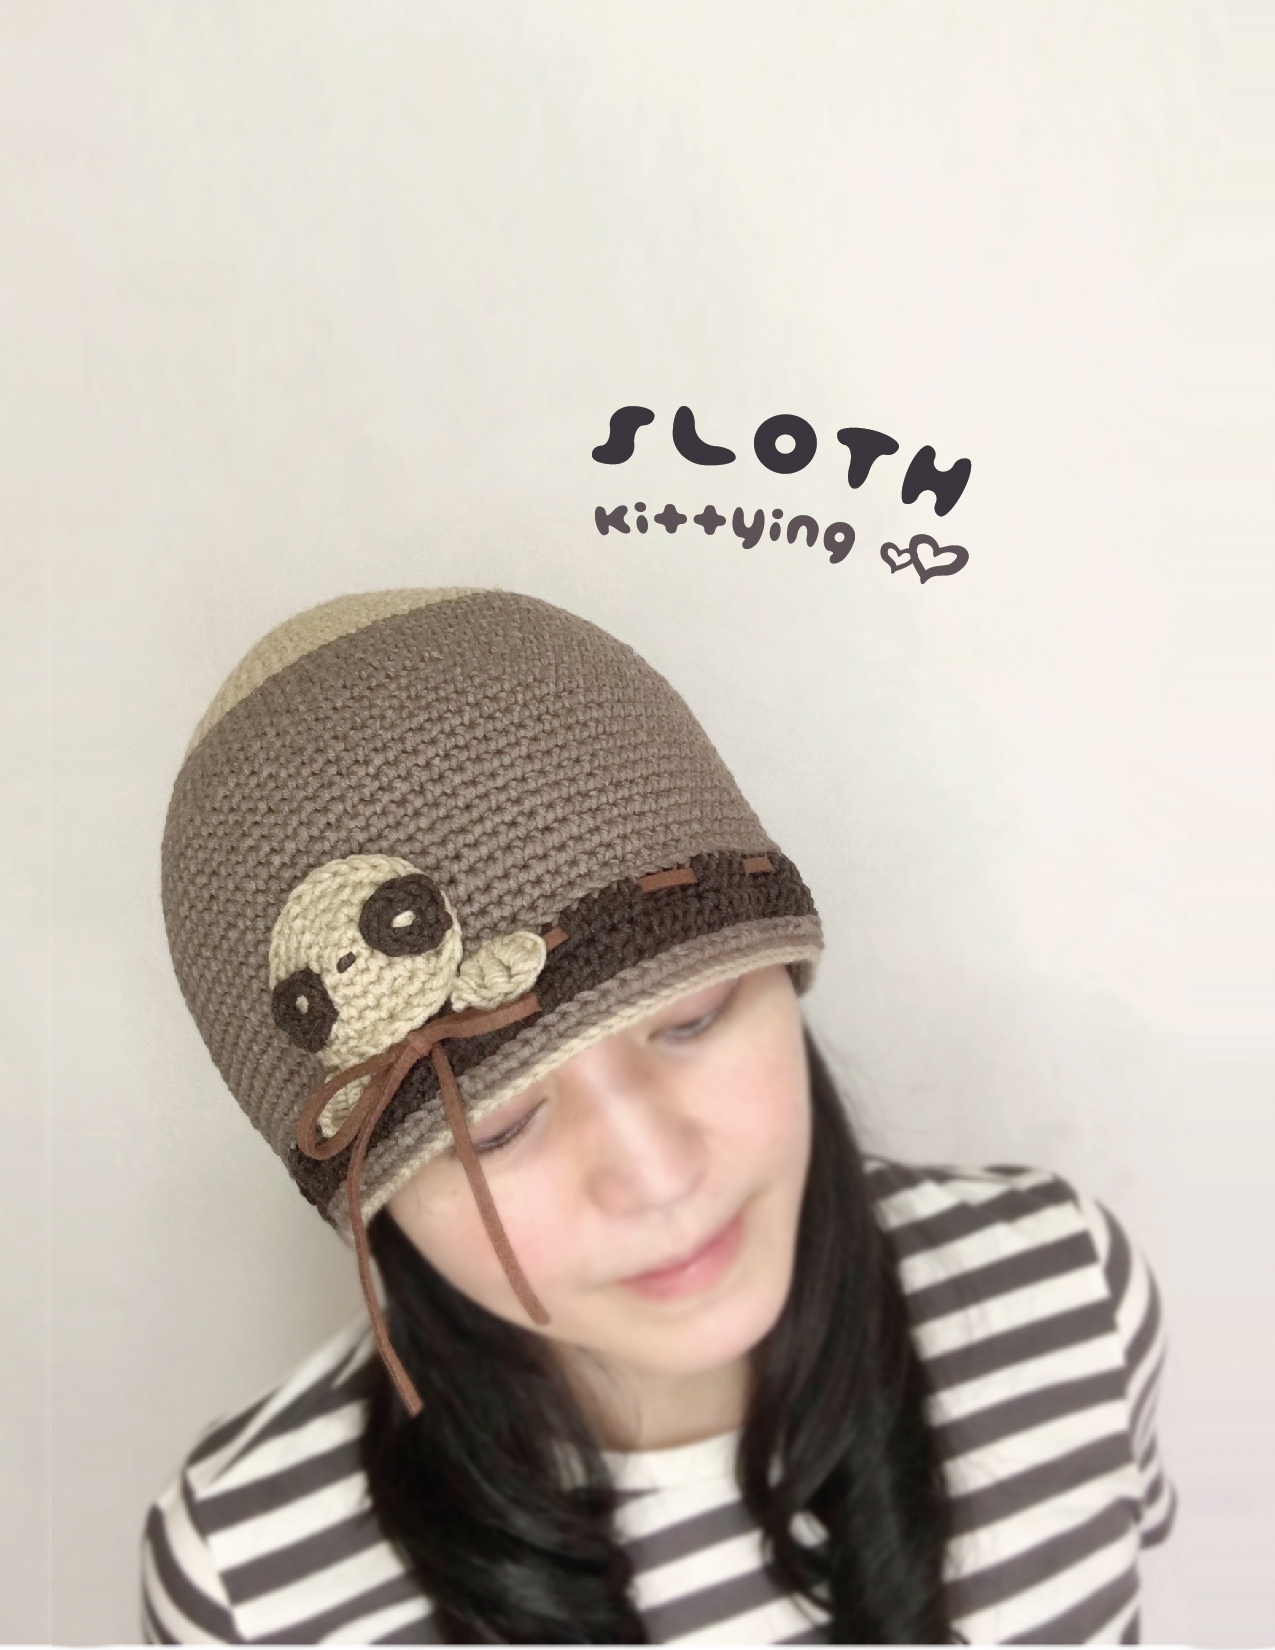 Crochet Pattern Sloth Beanie Hat - Sloth Crochet Patterns - Sloth Beanie, Sloth Hat, Sloth Toque, Sloth Headwear, Sloth Adult Crochet Pattern,